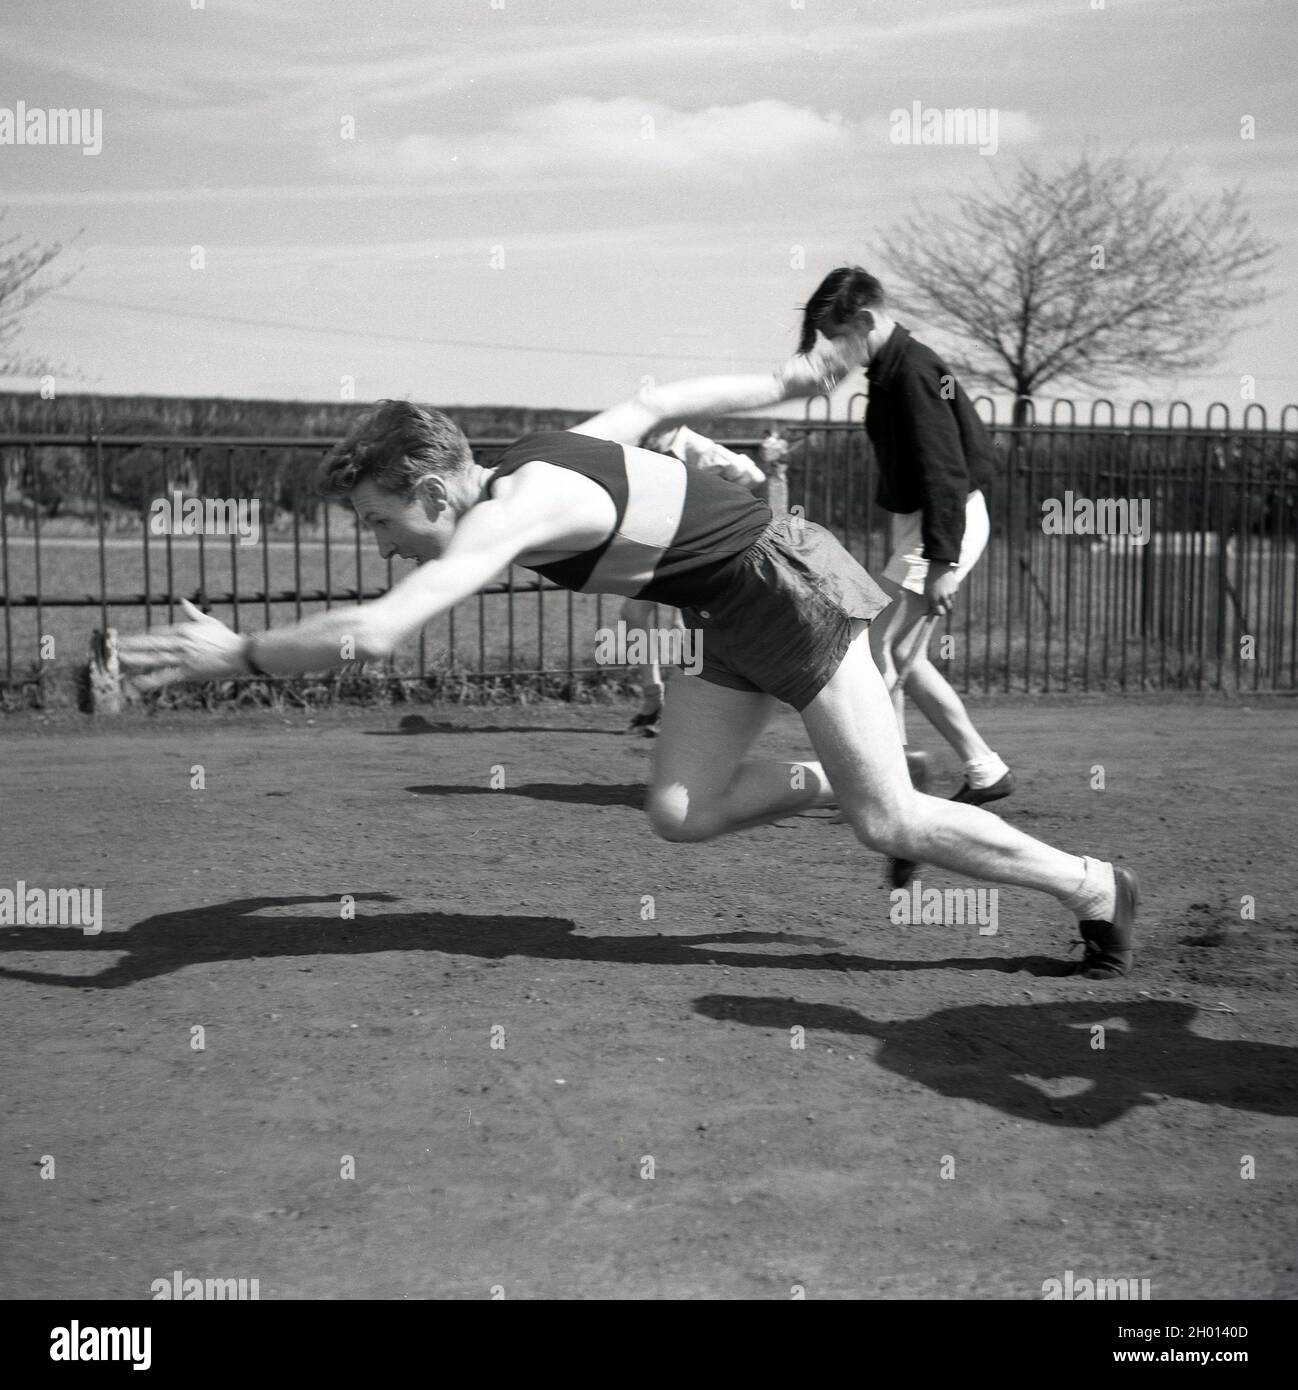 1960, historisch, draußen auf einem Seitengrasgelände an einem Zaun auf einem Sportplatz, ein junger erwachsener männlicher Athlet in Weste, kurz- und Sportschuhen, möglicherweise ein Sprinter, in einer hockigen Position mit den Armen aus, übt seinen Start, England, Großbritannien. Stockfoto